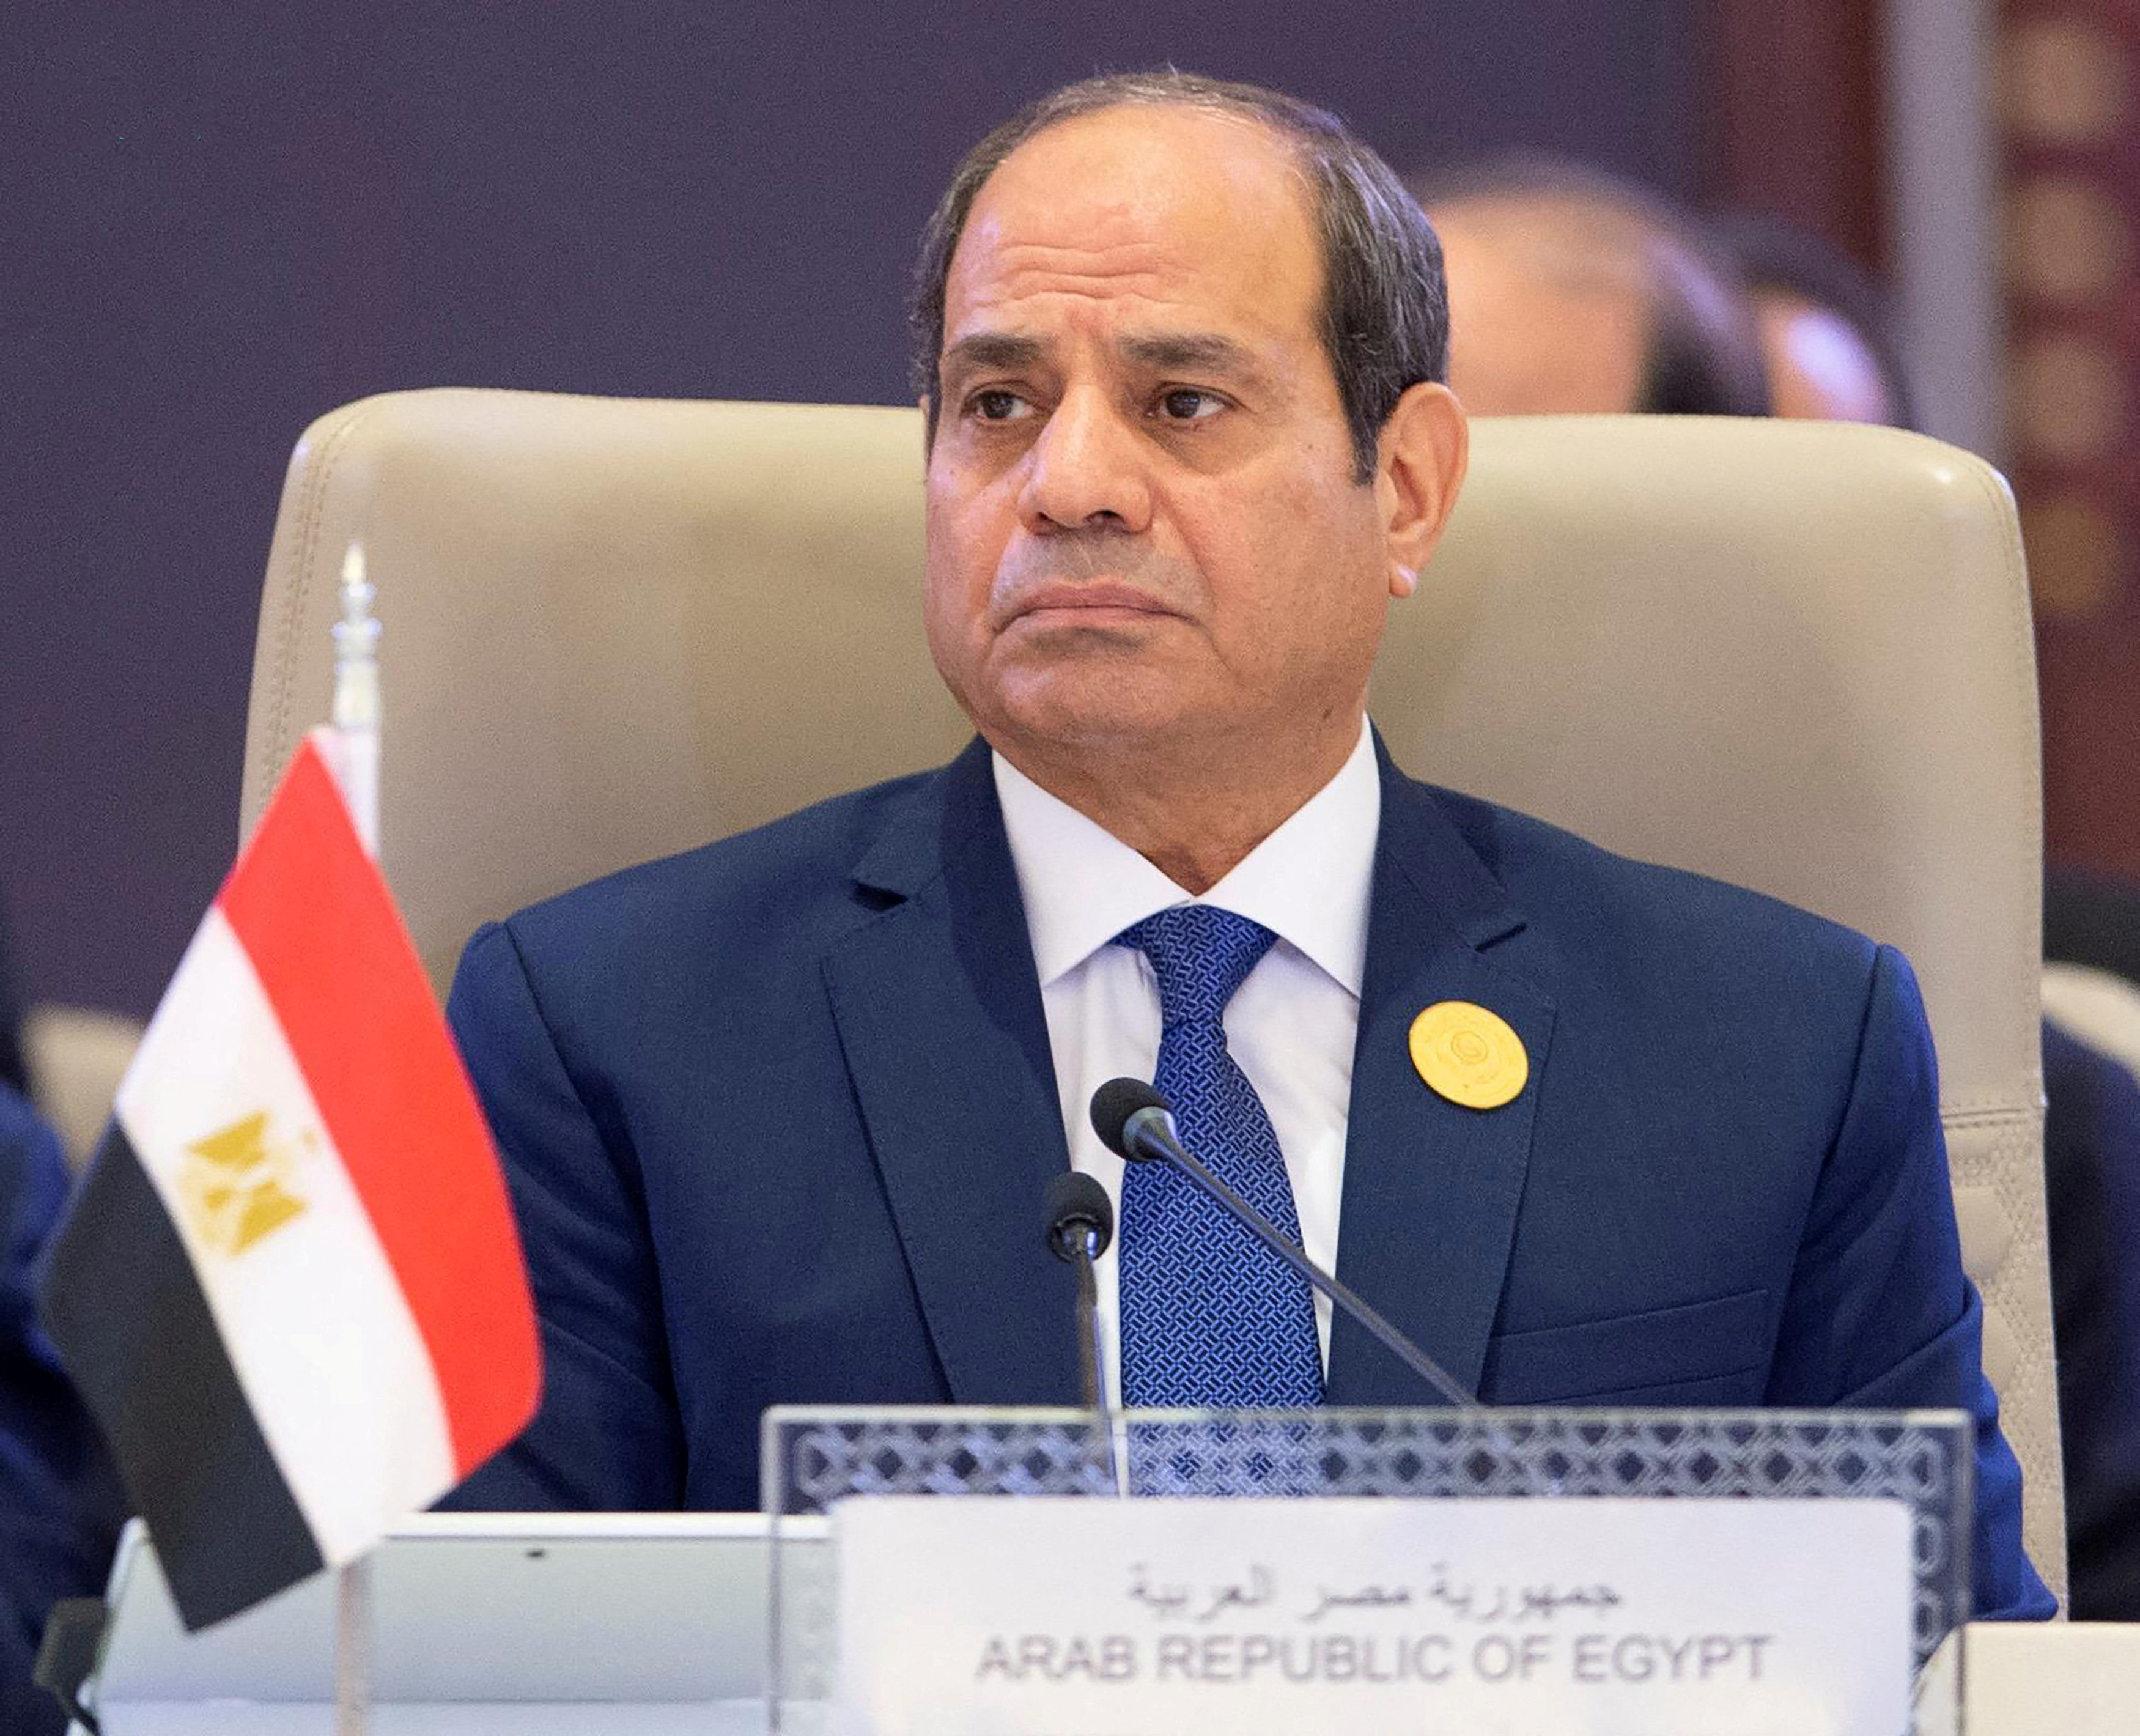 Estados Unidos retiene 85 millones de dólares en ayuda a Egipto por detenciones políticas